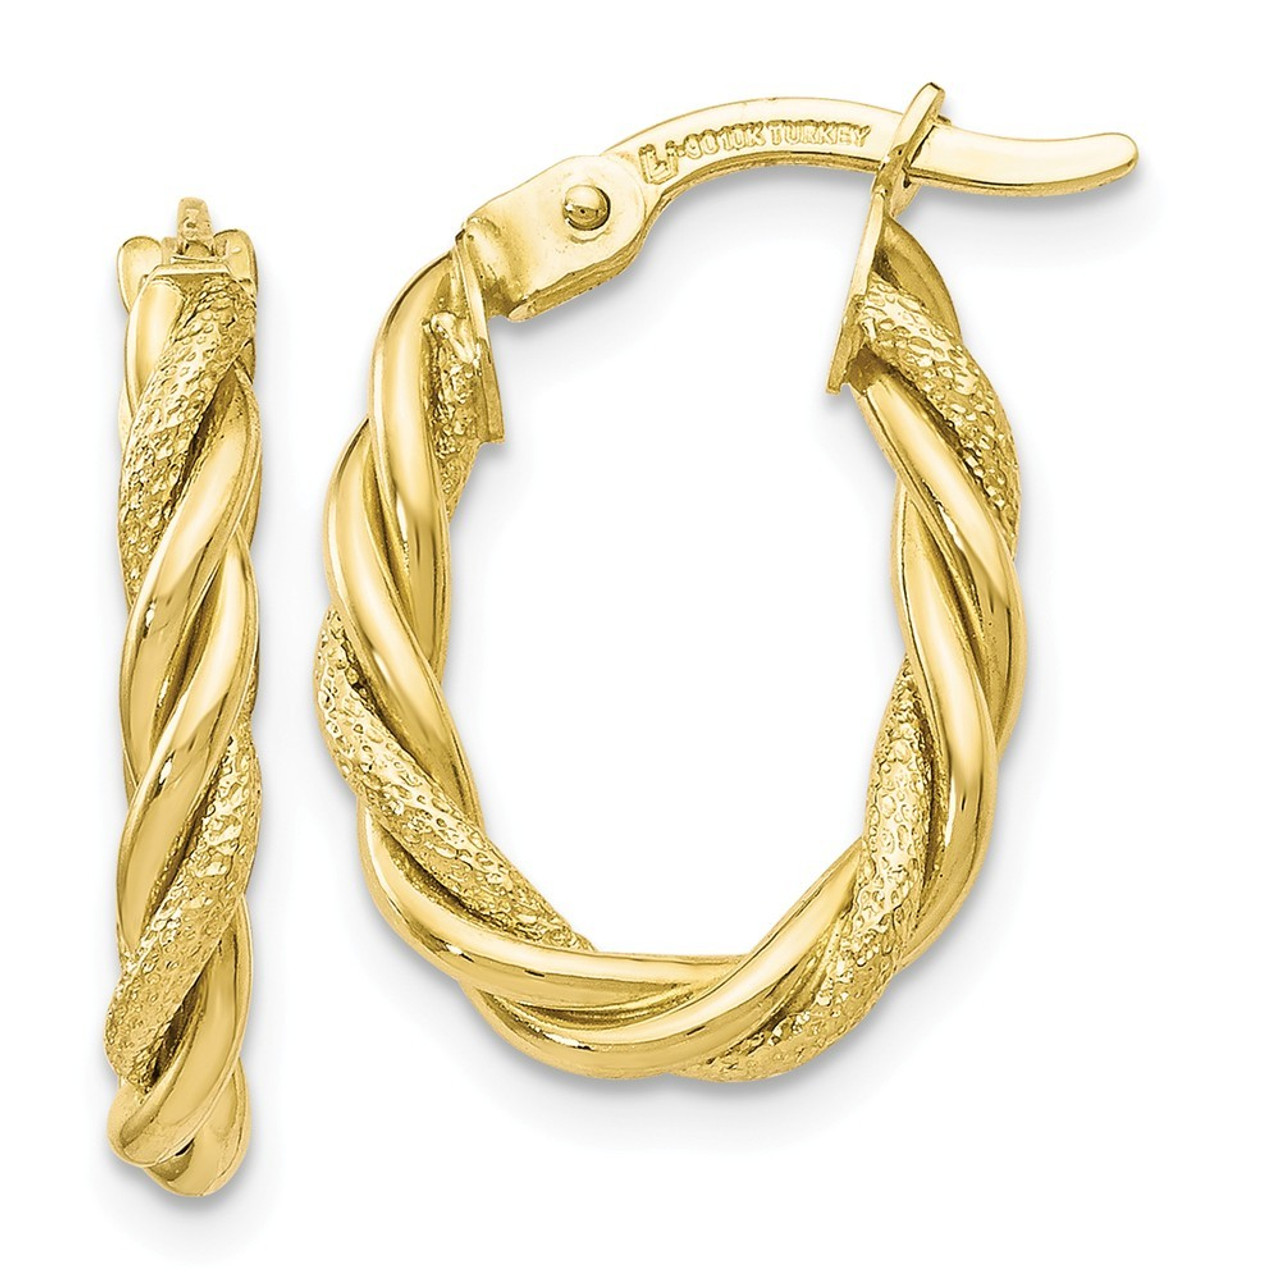 13mm Open Heart Hoop Earrings in 10K Gold